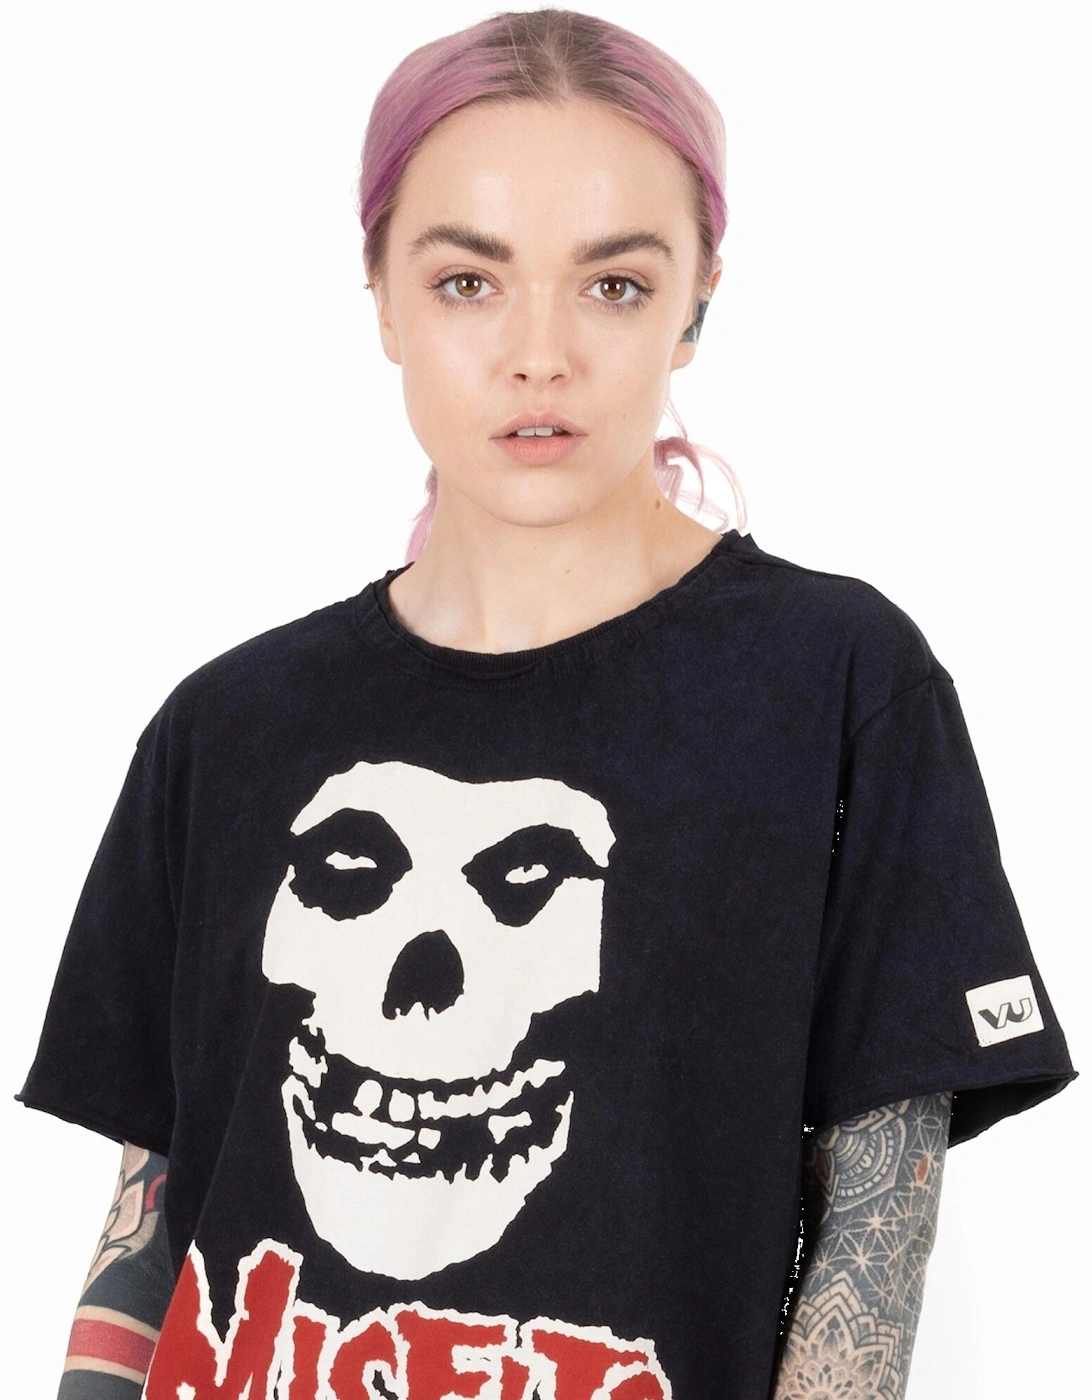 Unisex Adult Skull T-Shirt